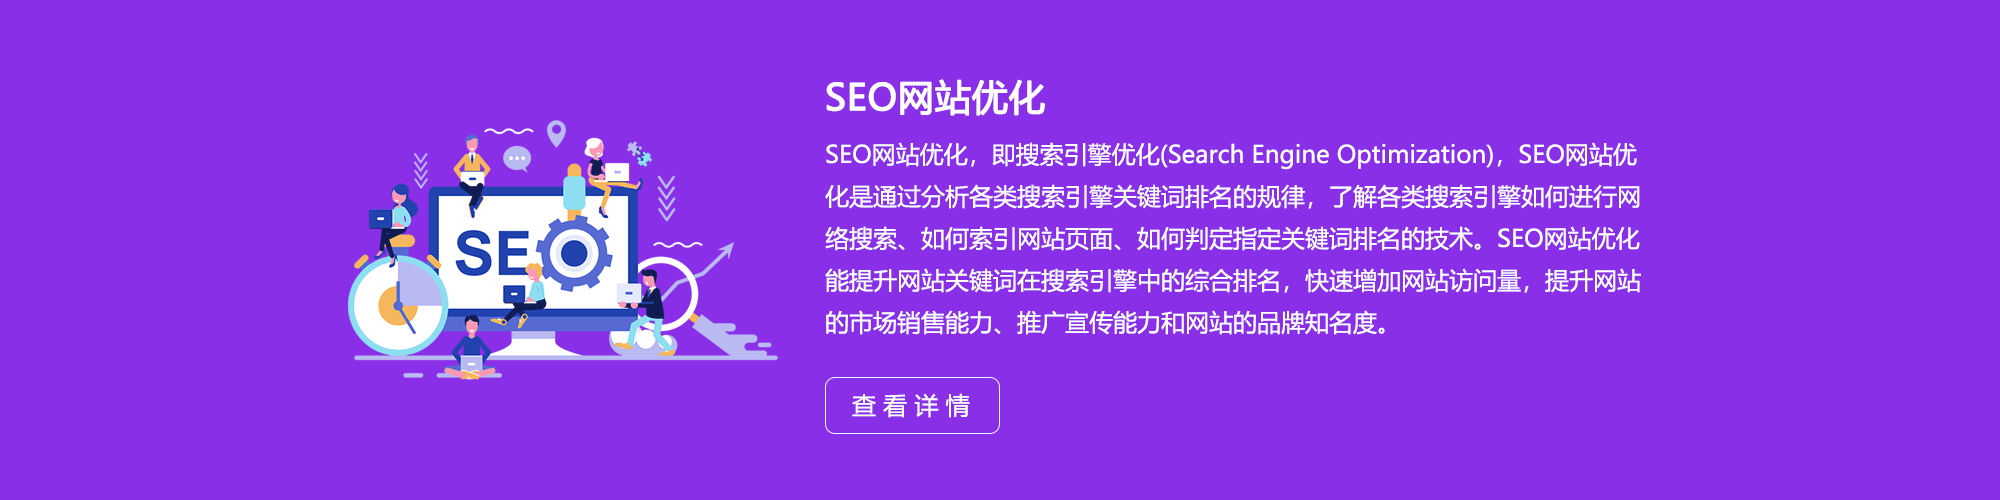 义乌SEO网站优化公司